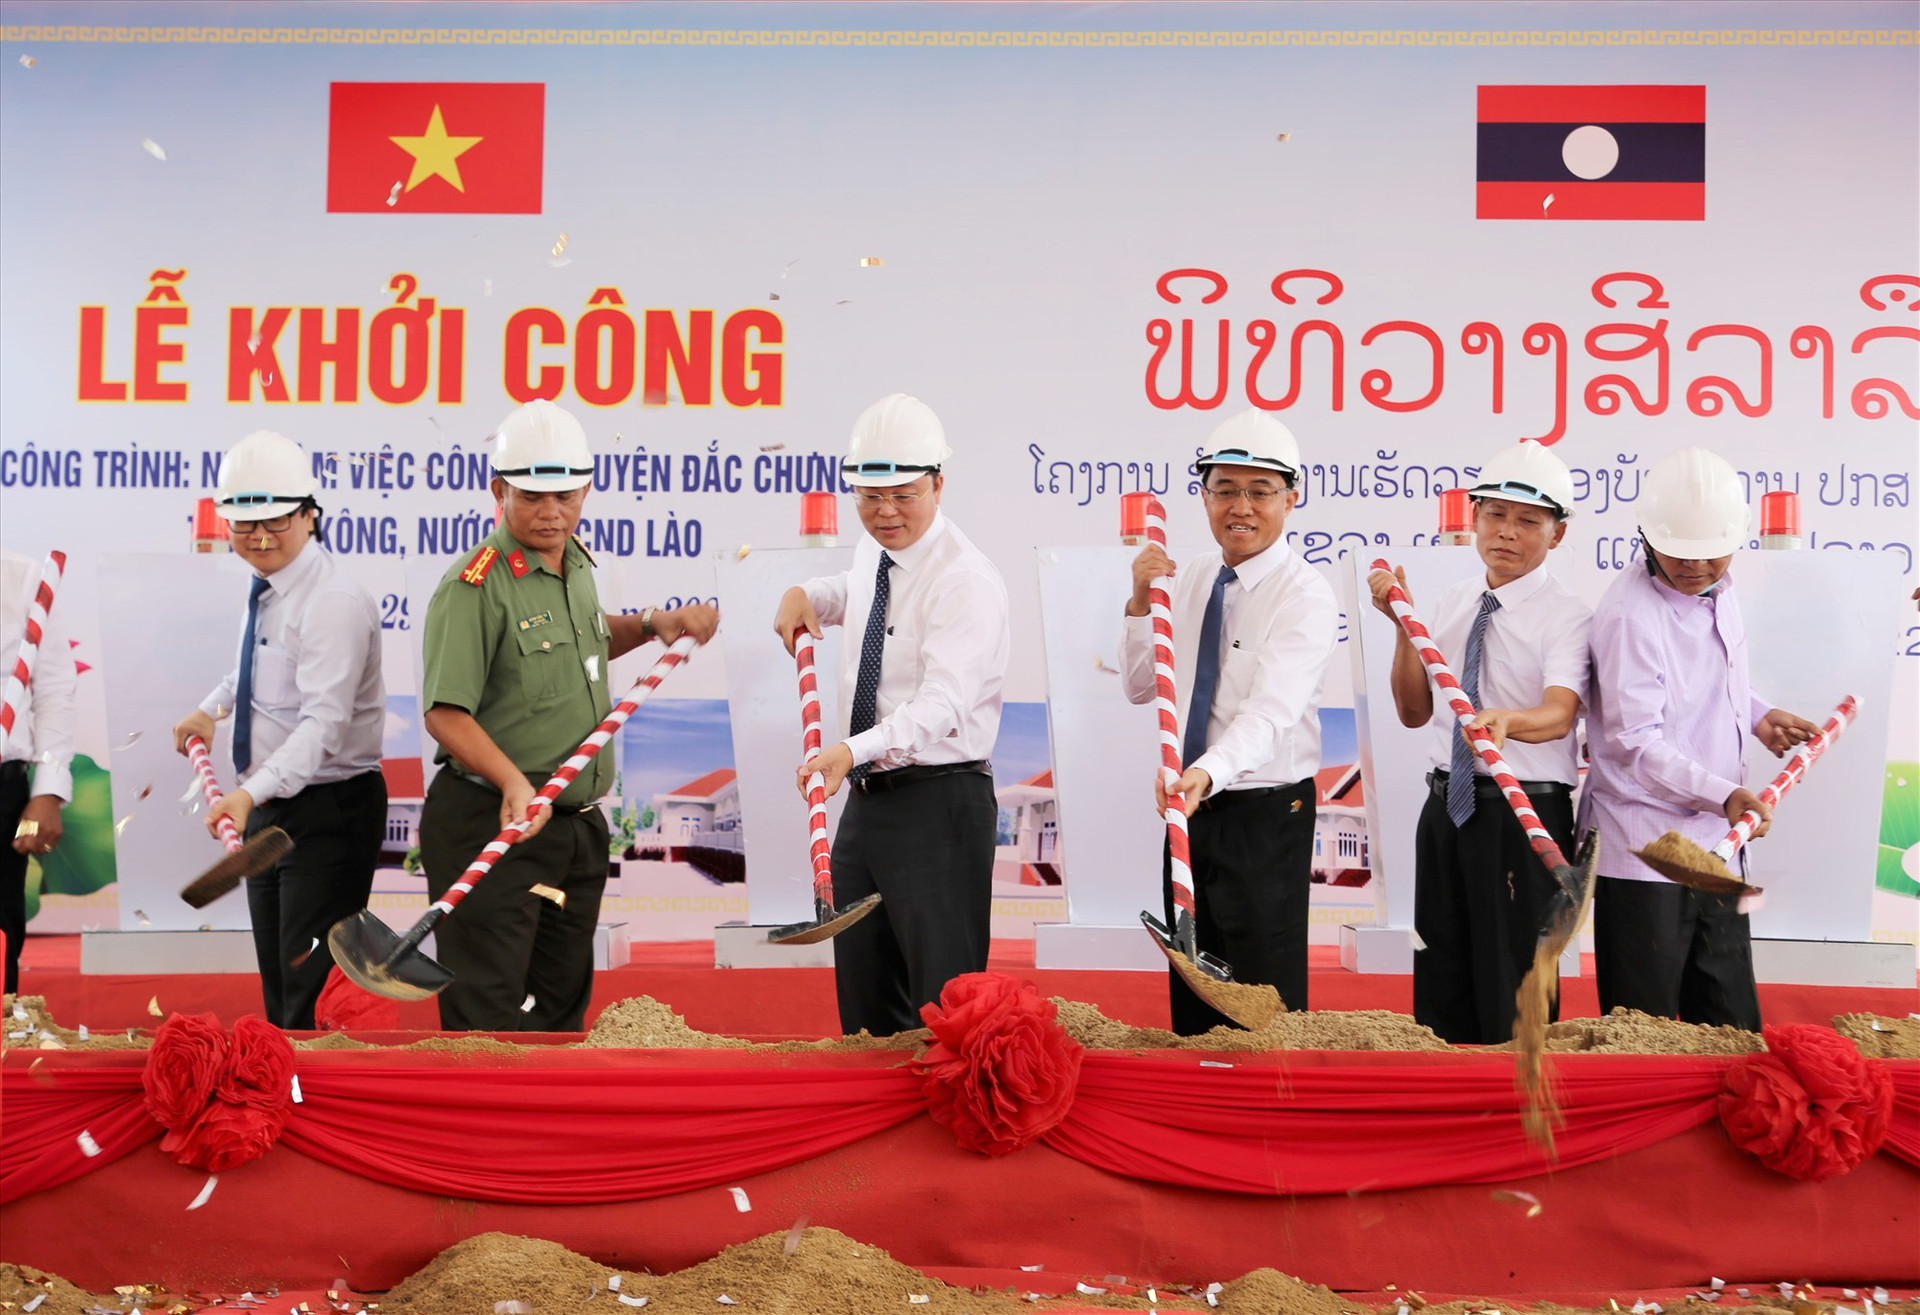 Lãnh đạo 2 tỉnh Quảng Nam - Sê Kông thực hiện nghi thức khởi công nhà làm việc Công an huyện Đắc Chưng. Ảnh: ĐĂNG NGUYÊN